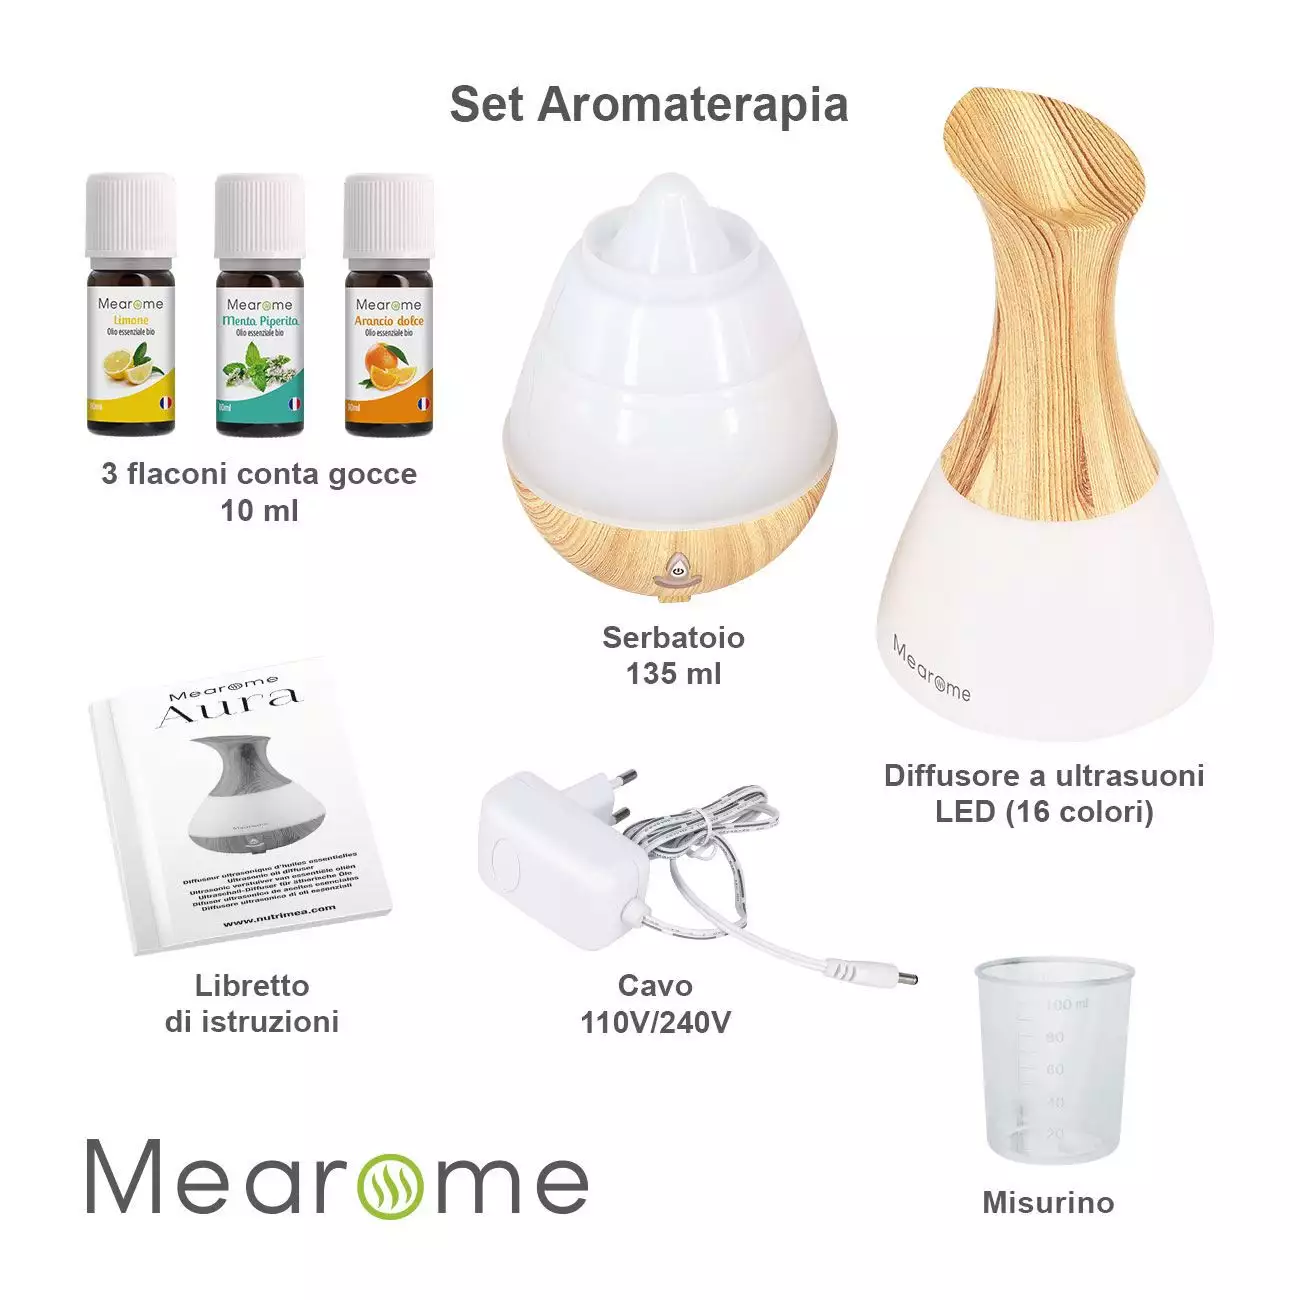 Illustrazione del portapillole dell'Olio essenziale Kit Aromaterapia - Diffusore + 3 Oli Essenziali